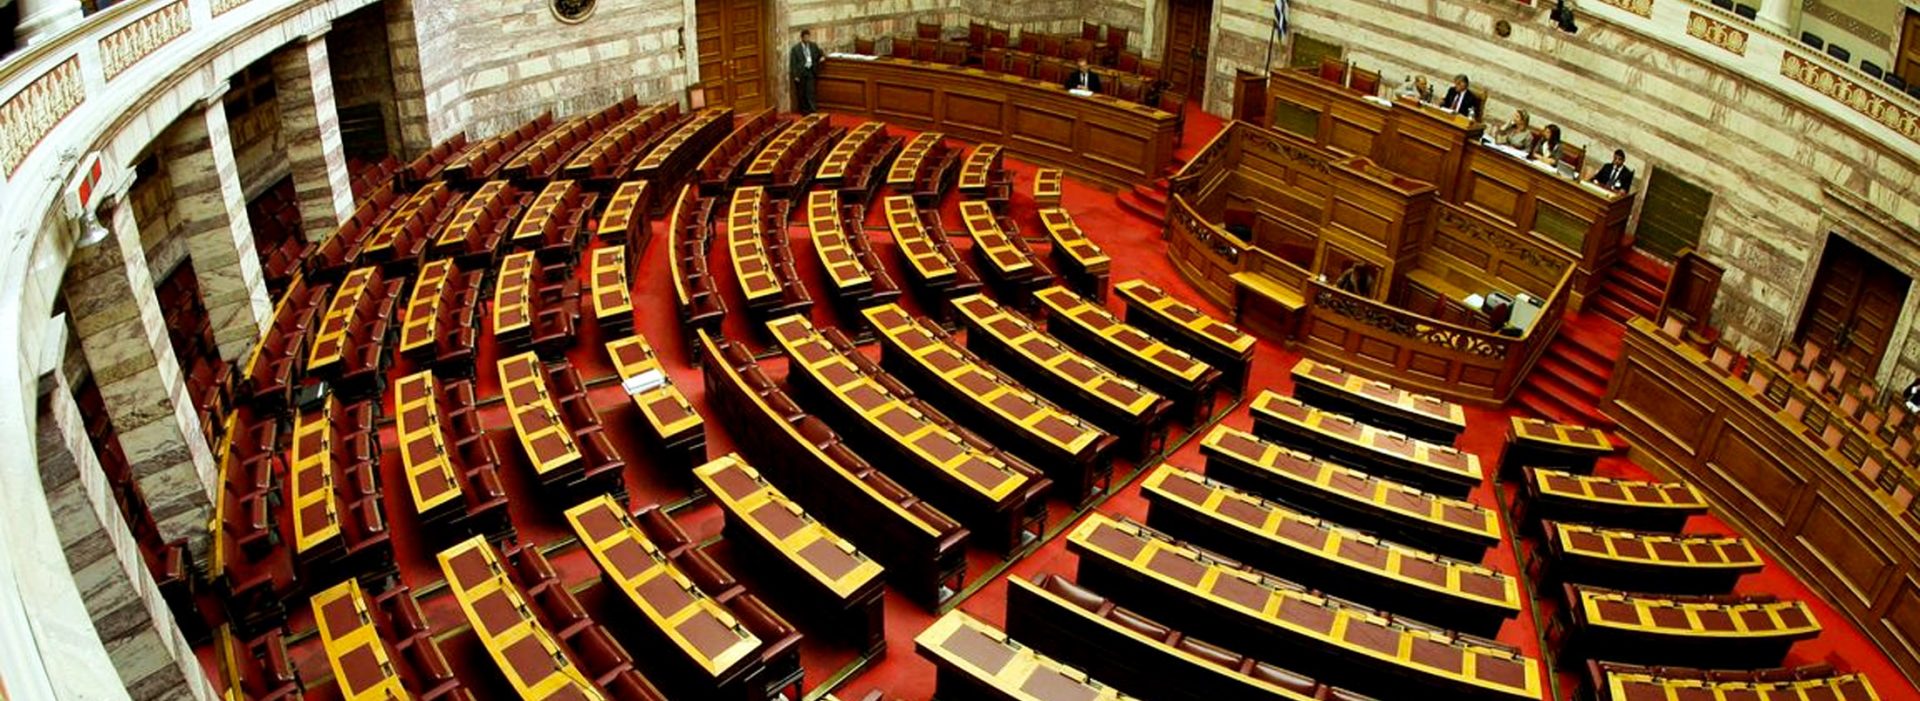 Βουλή: Στην επιτροπή Οικονομικών το νομοσχέδιο για την ενίσχυση των εισοδημάτων